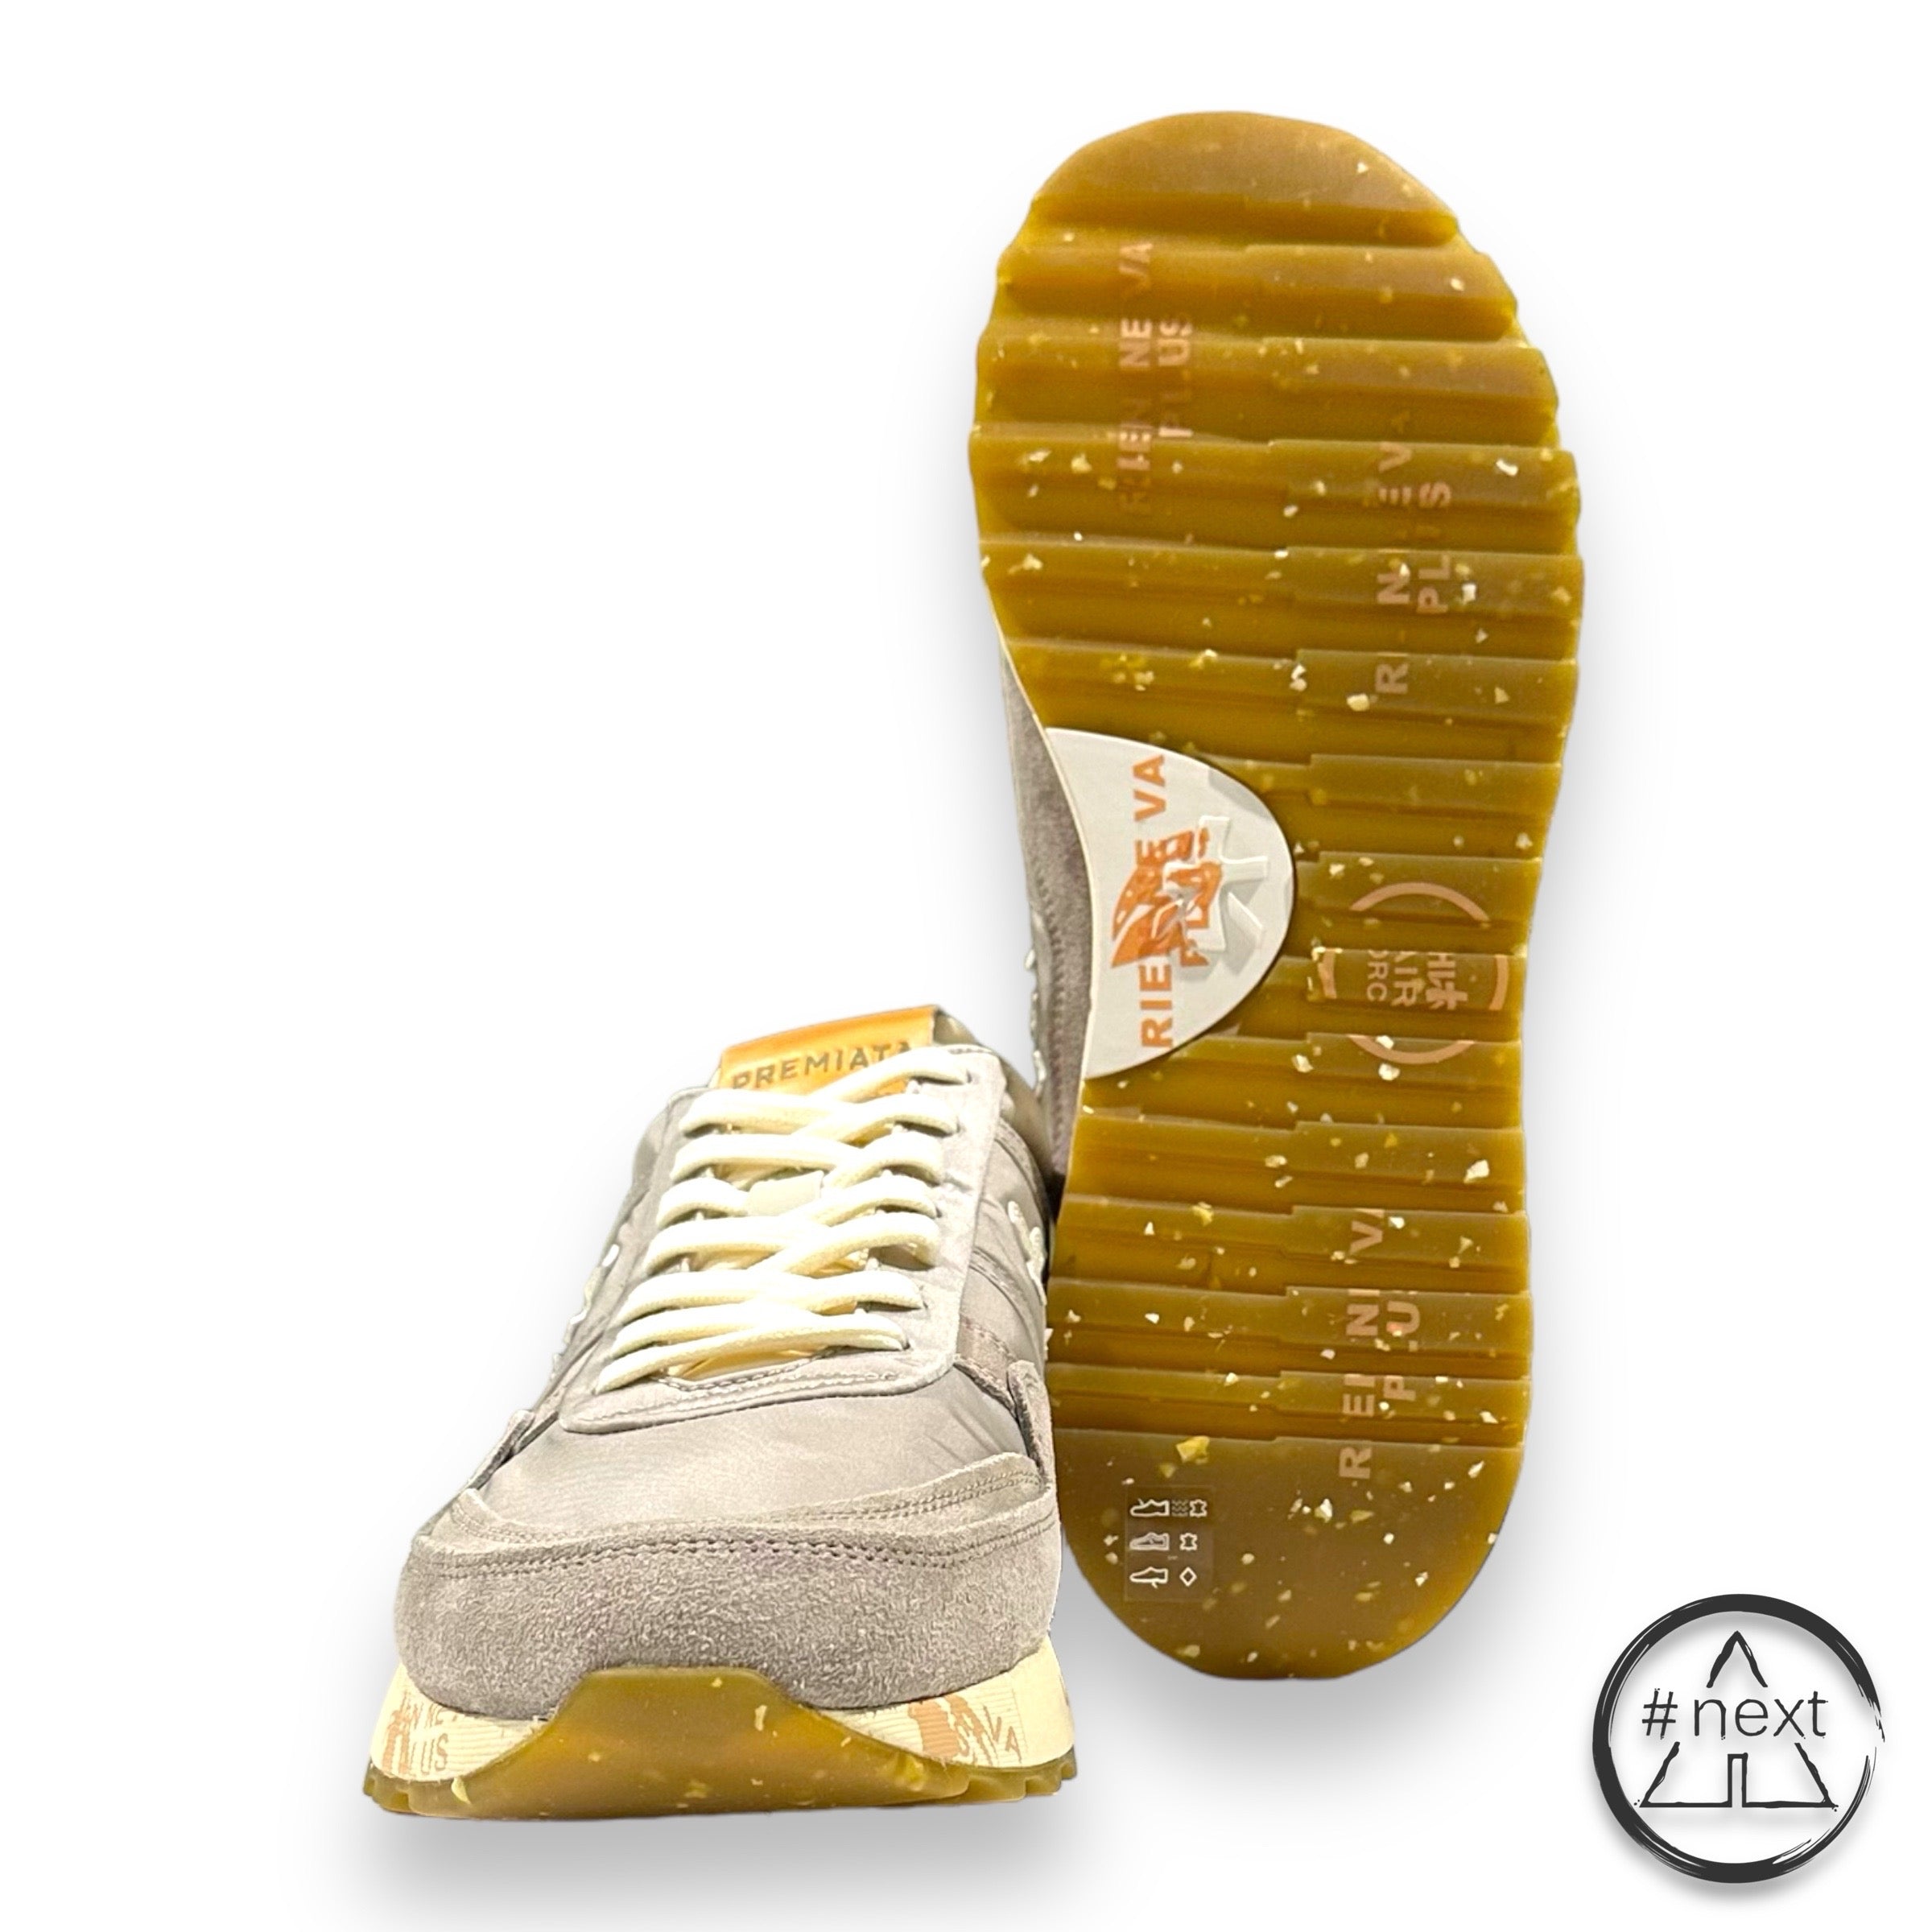 (#H) Premiata - sneakers LANDECK var. 6609 - Grigio, arancio. - ANDY #NEXT